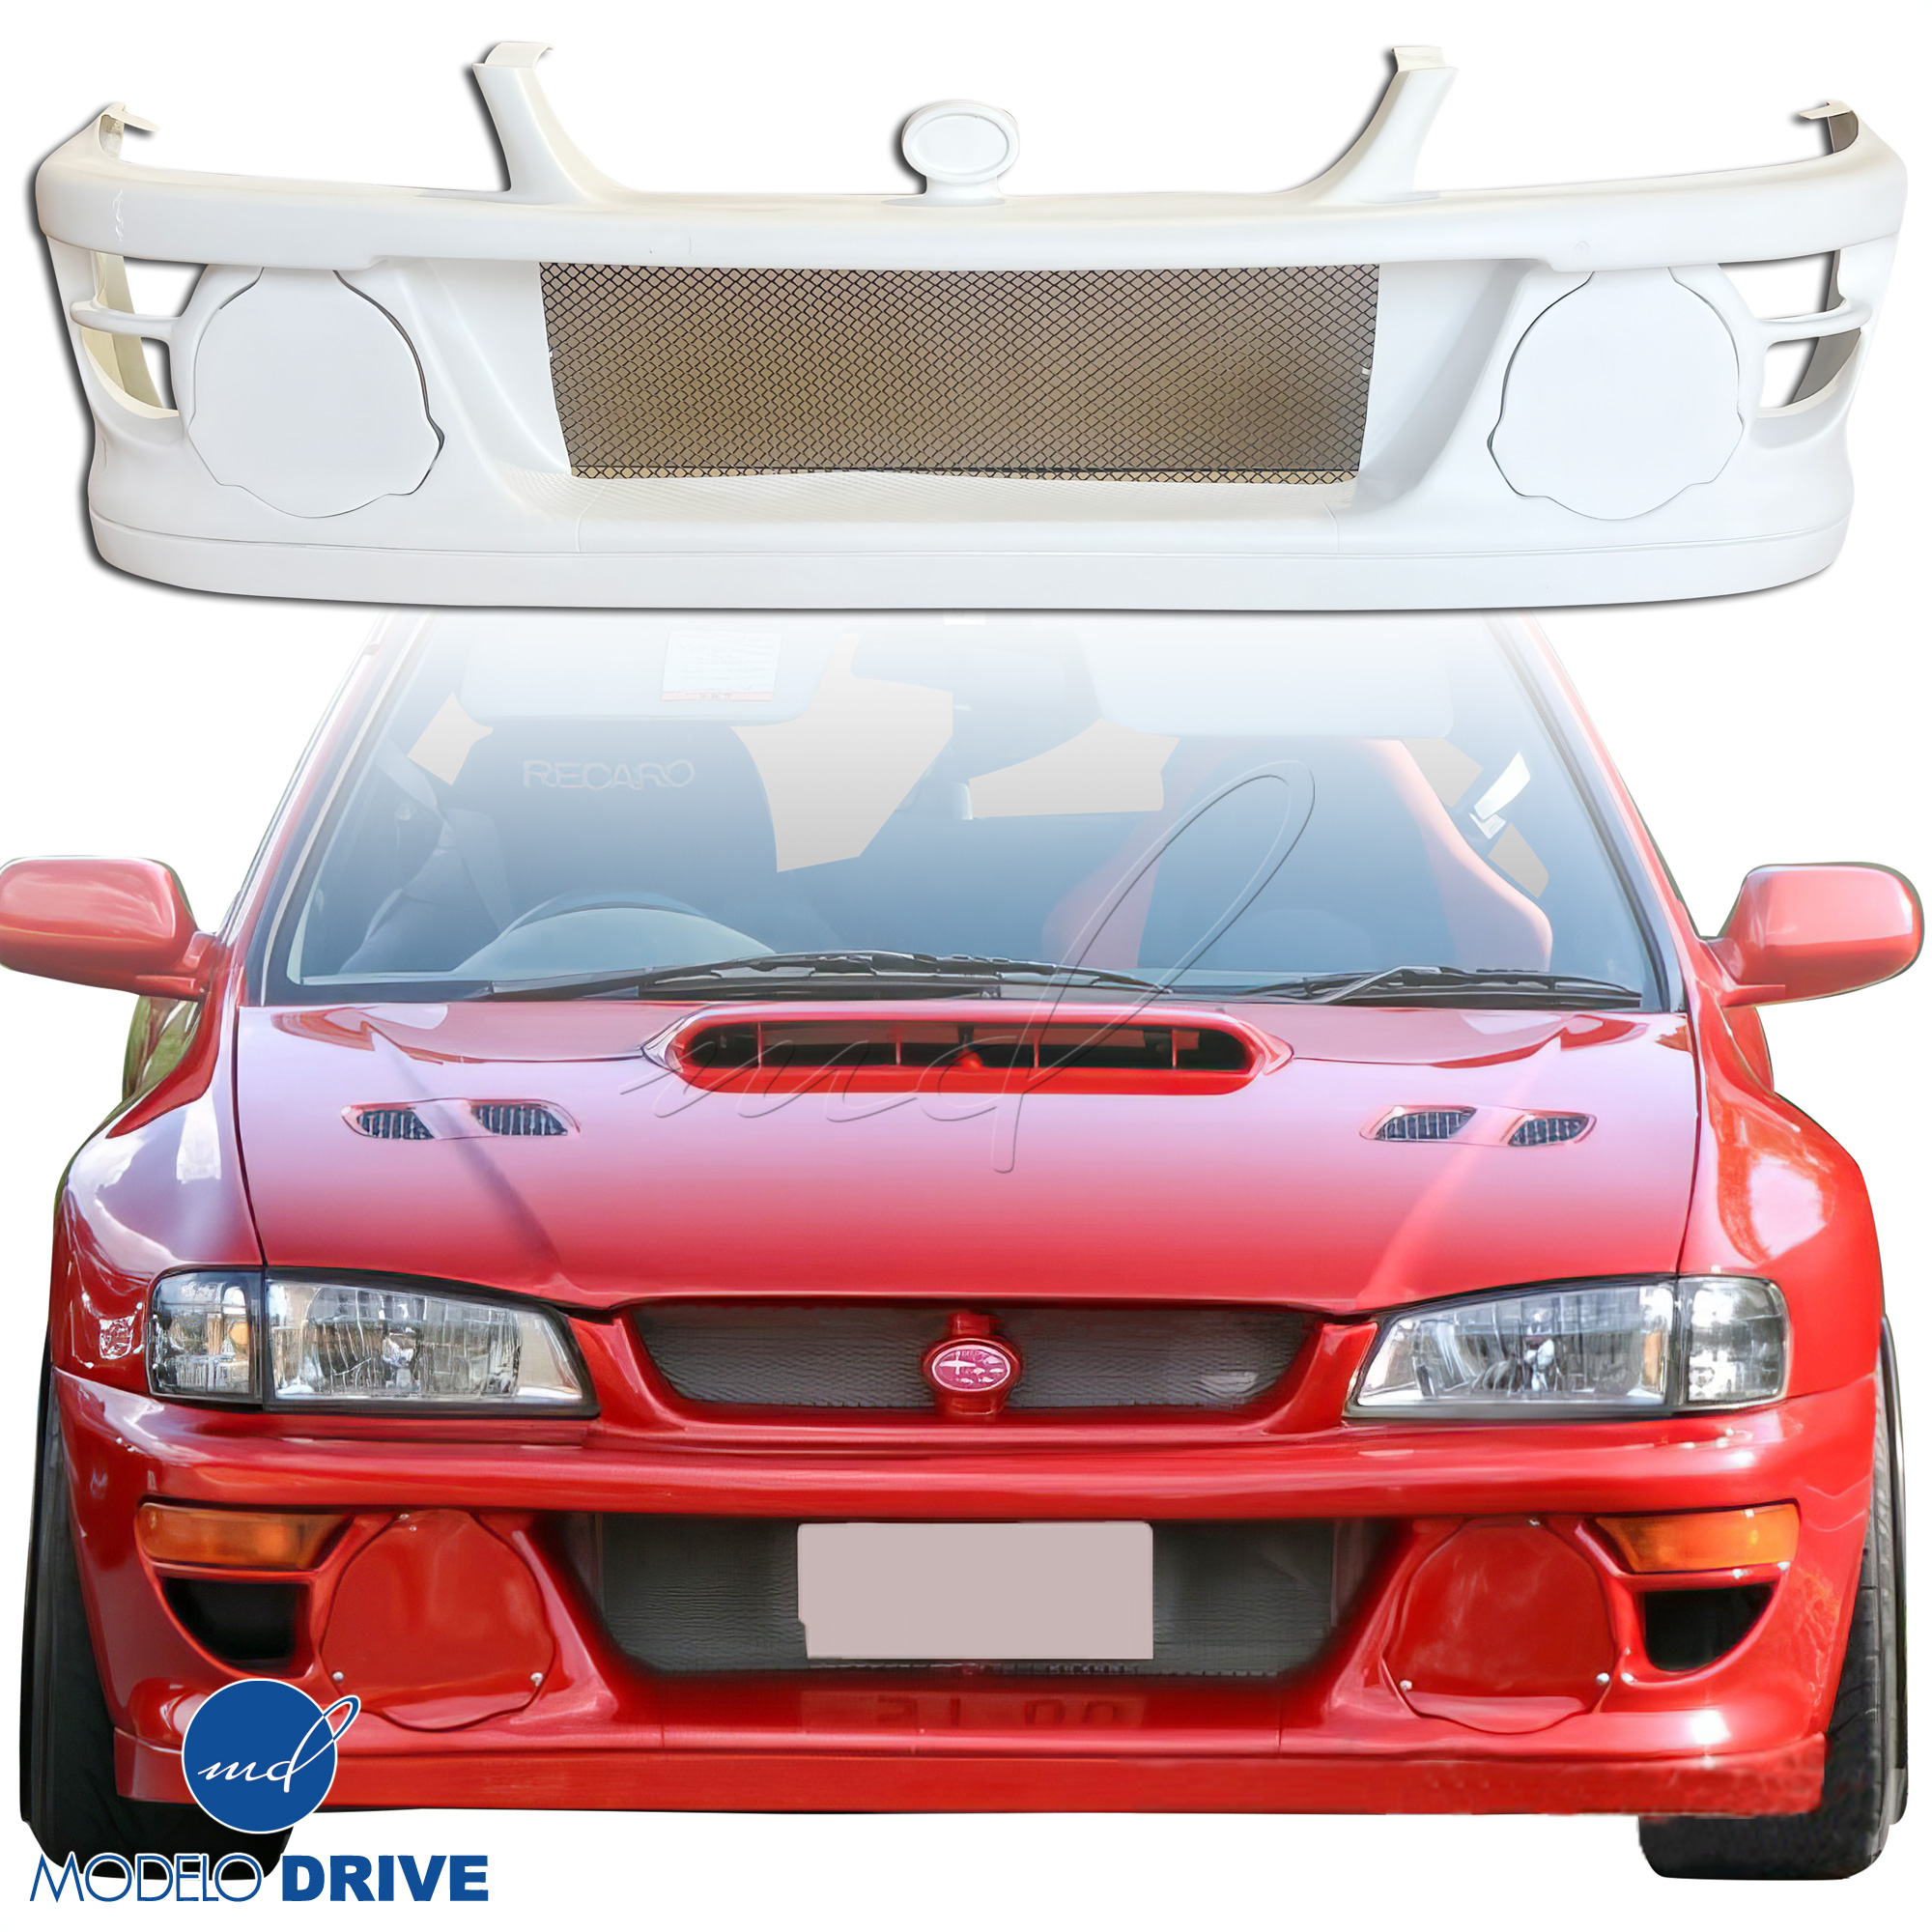 ModeloDrive FRP LS WRC 98 Front Bumper w Caps 3pc > Subaru Impreza (GC8) 1993-2001 > 2/4dr - Image 11